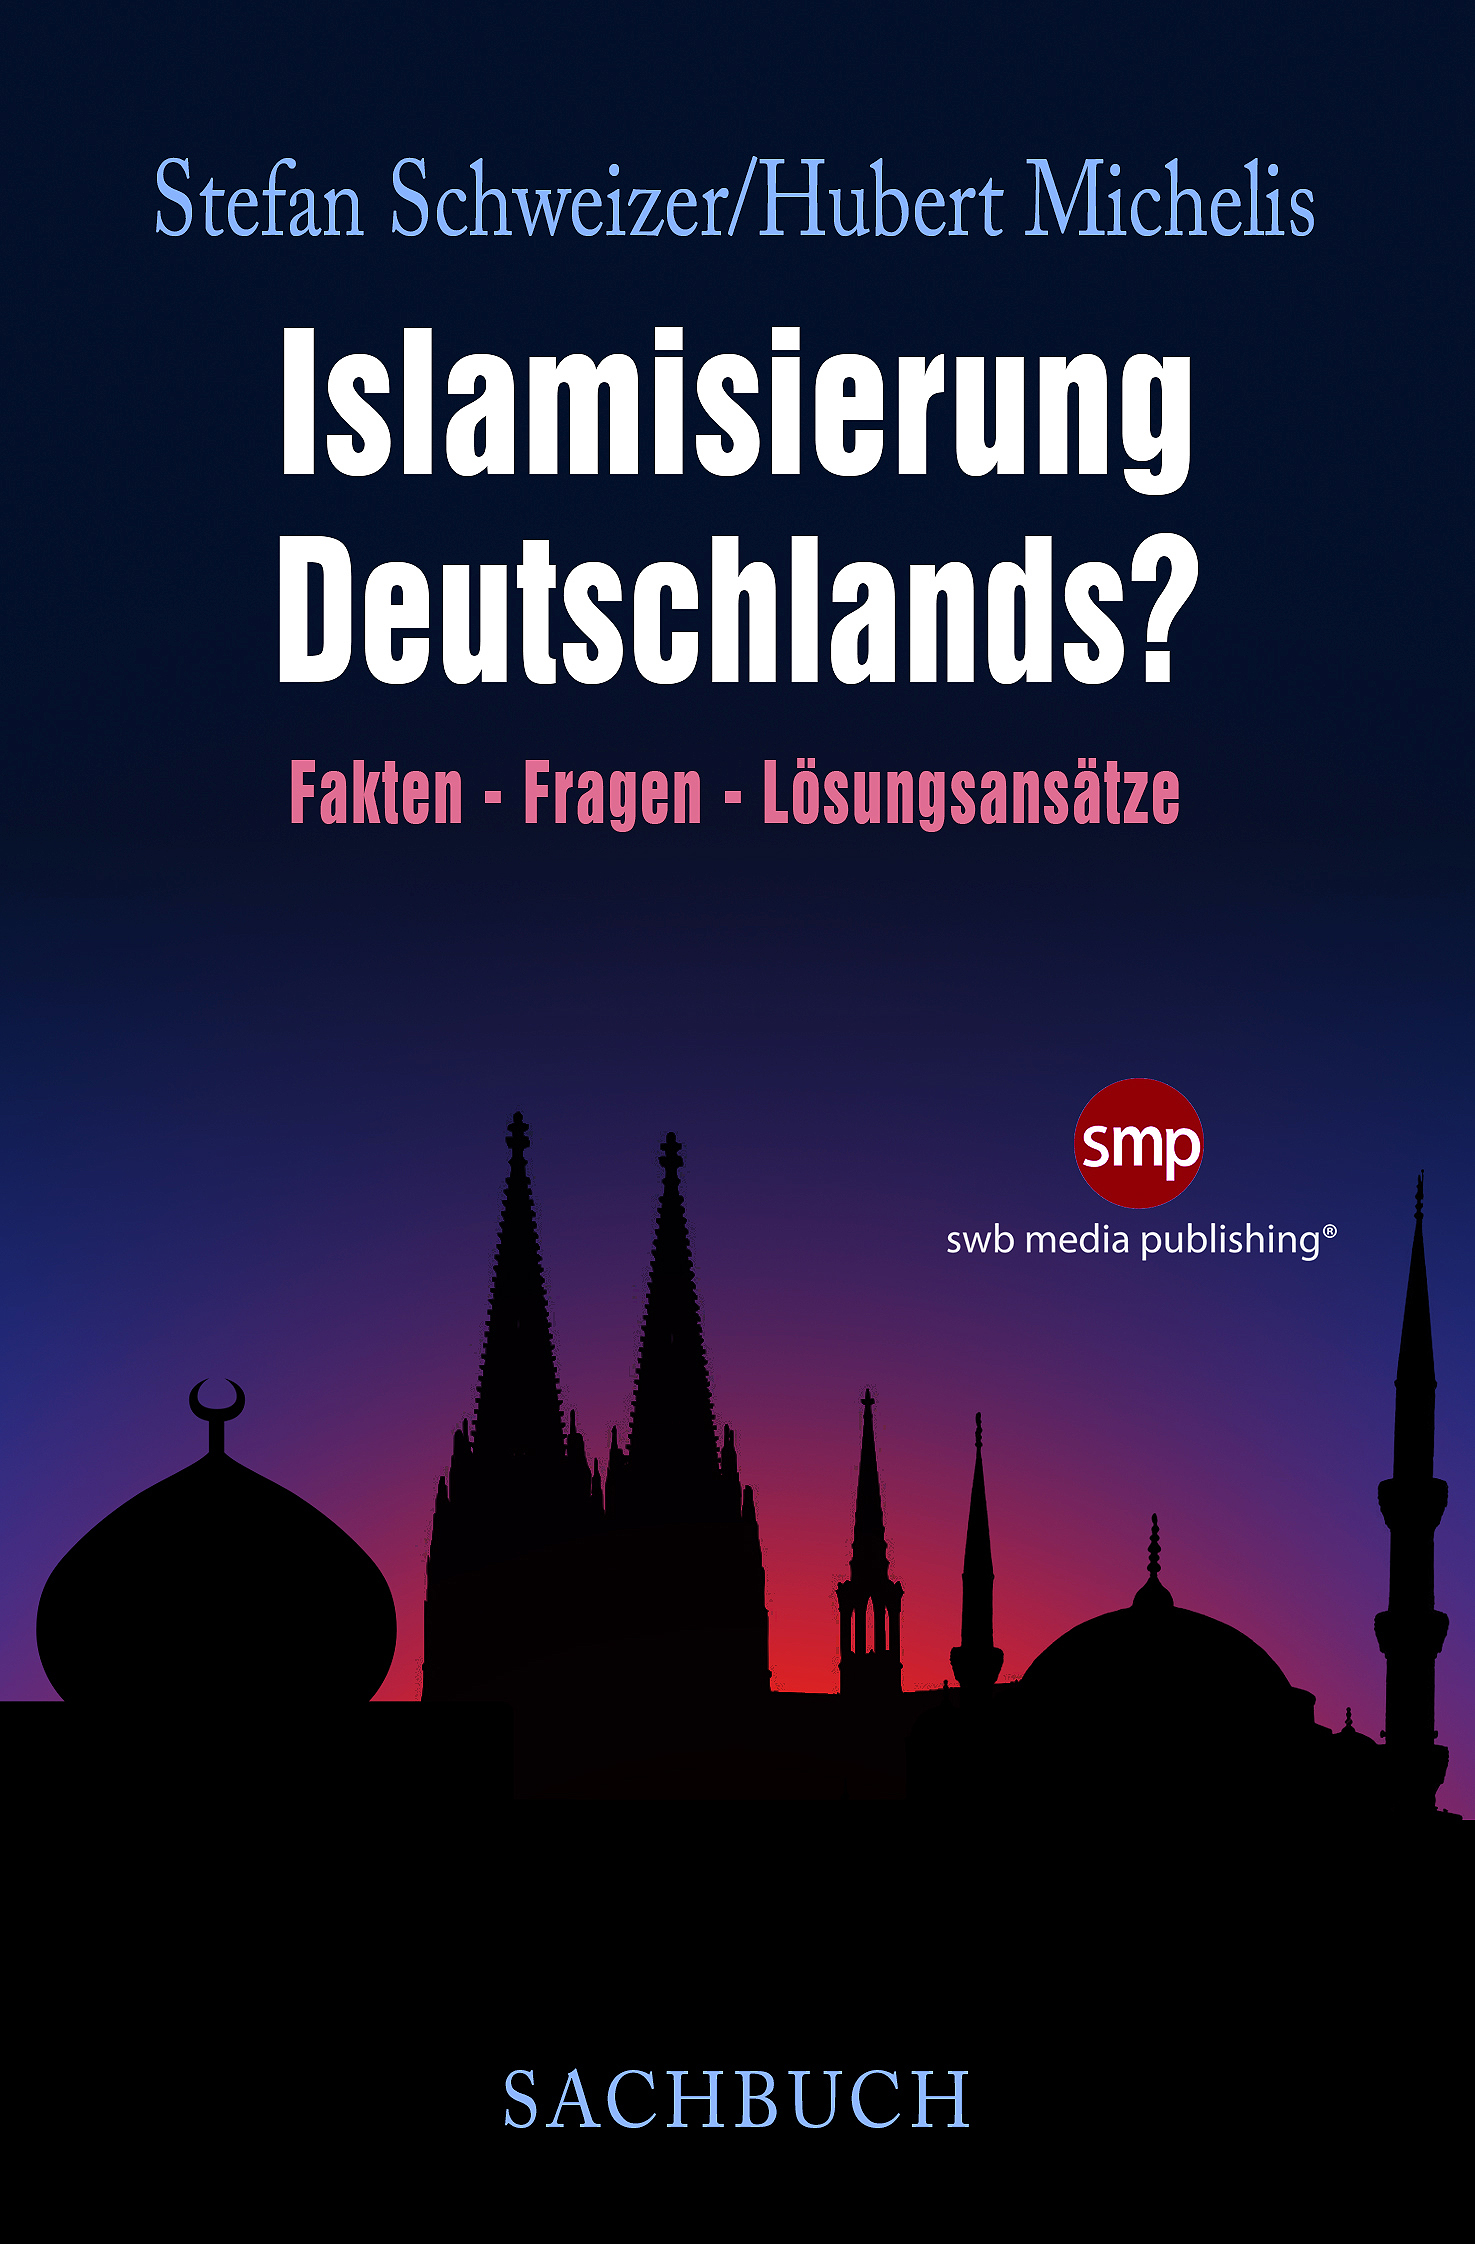 Buchcover Schweizer Islamisierung Deutschlands